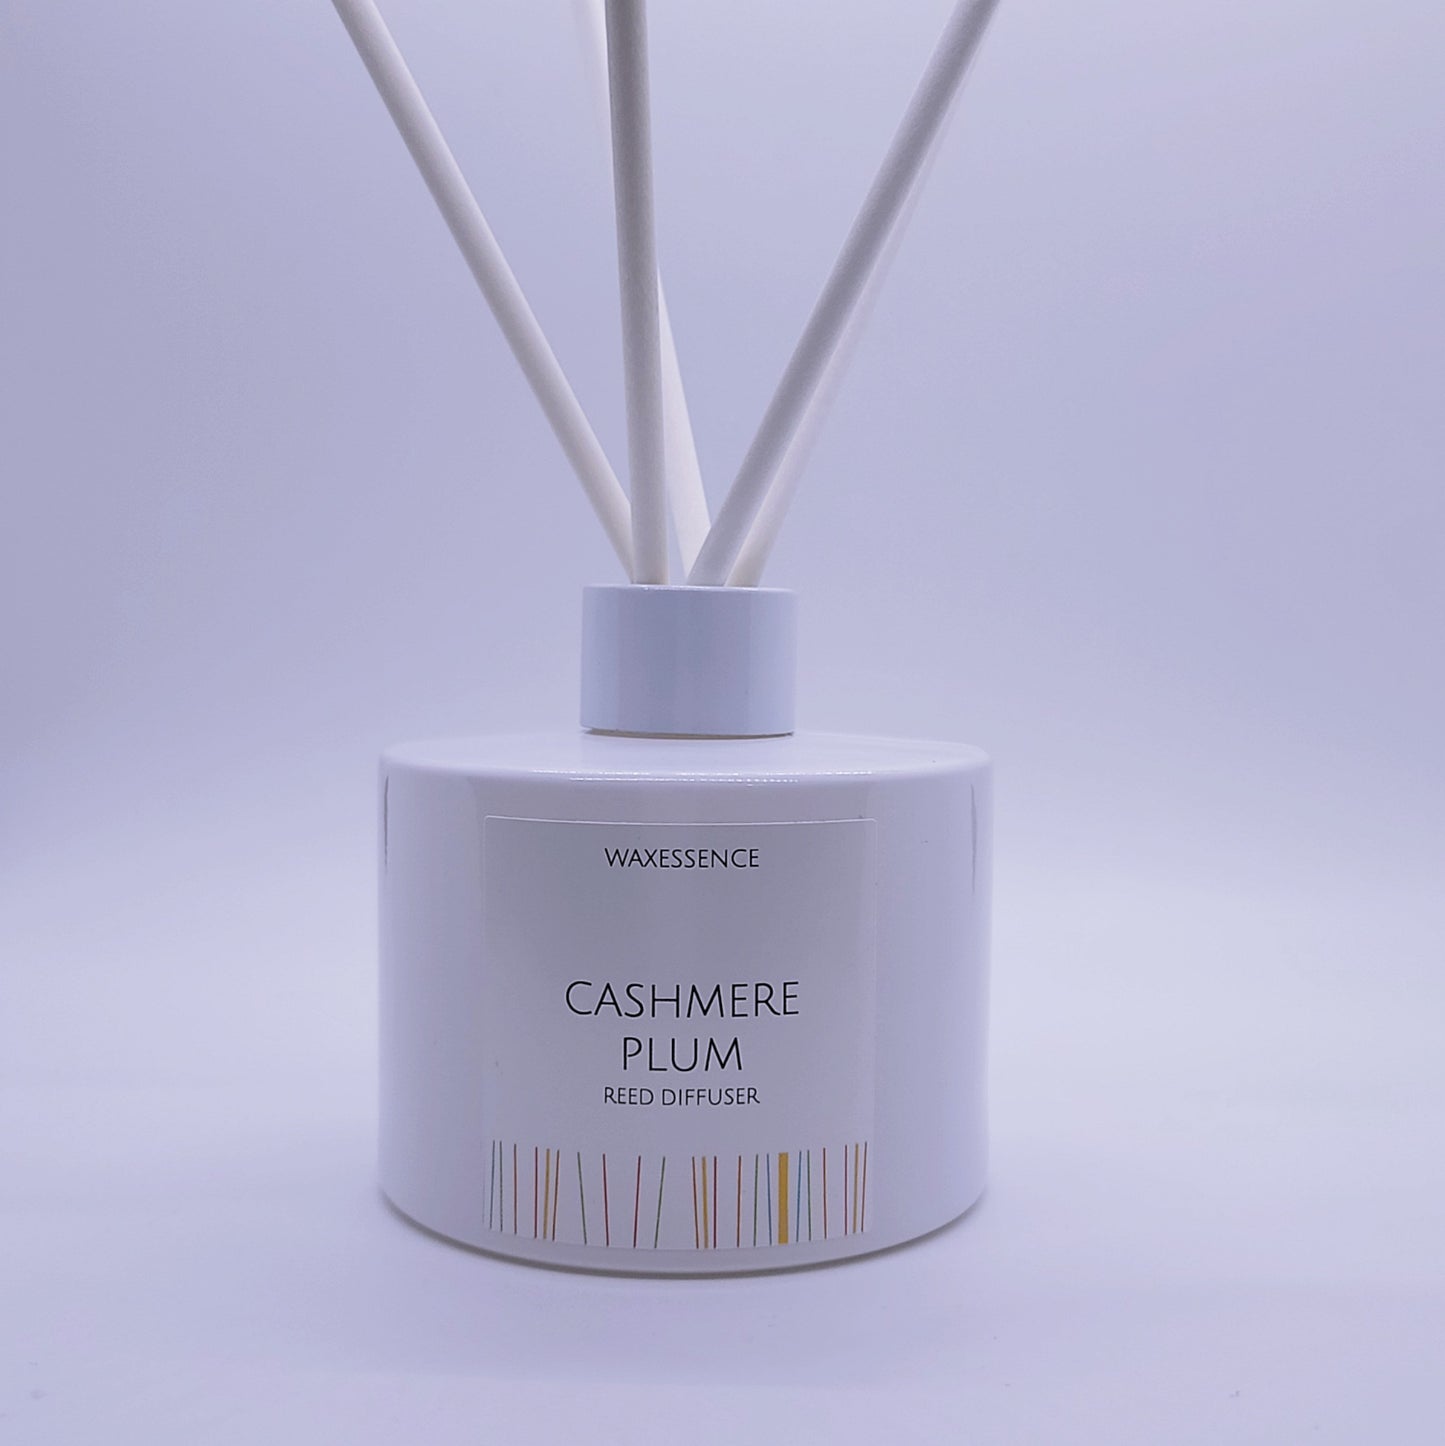 Cashmere Plum Reed Diffuser | Essenza Gloss White  | Aromatherapy Home Decor | Diffuser Oil | 6.8 fl. oz